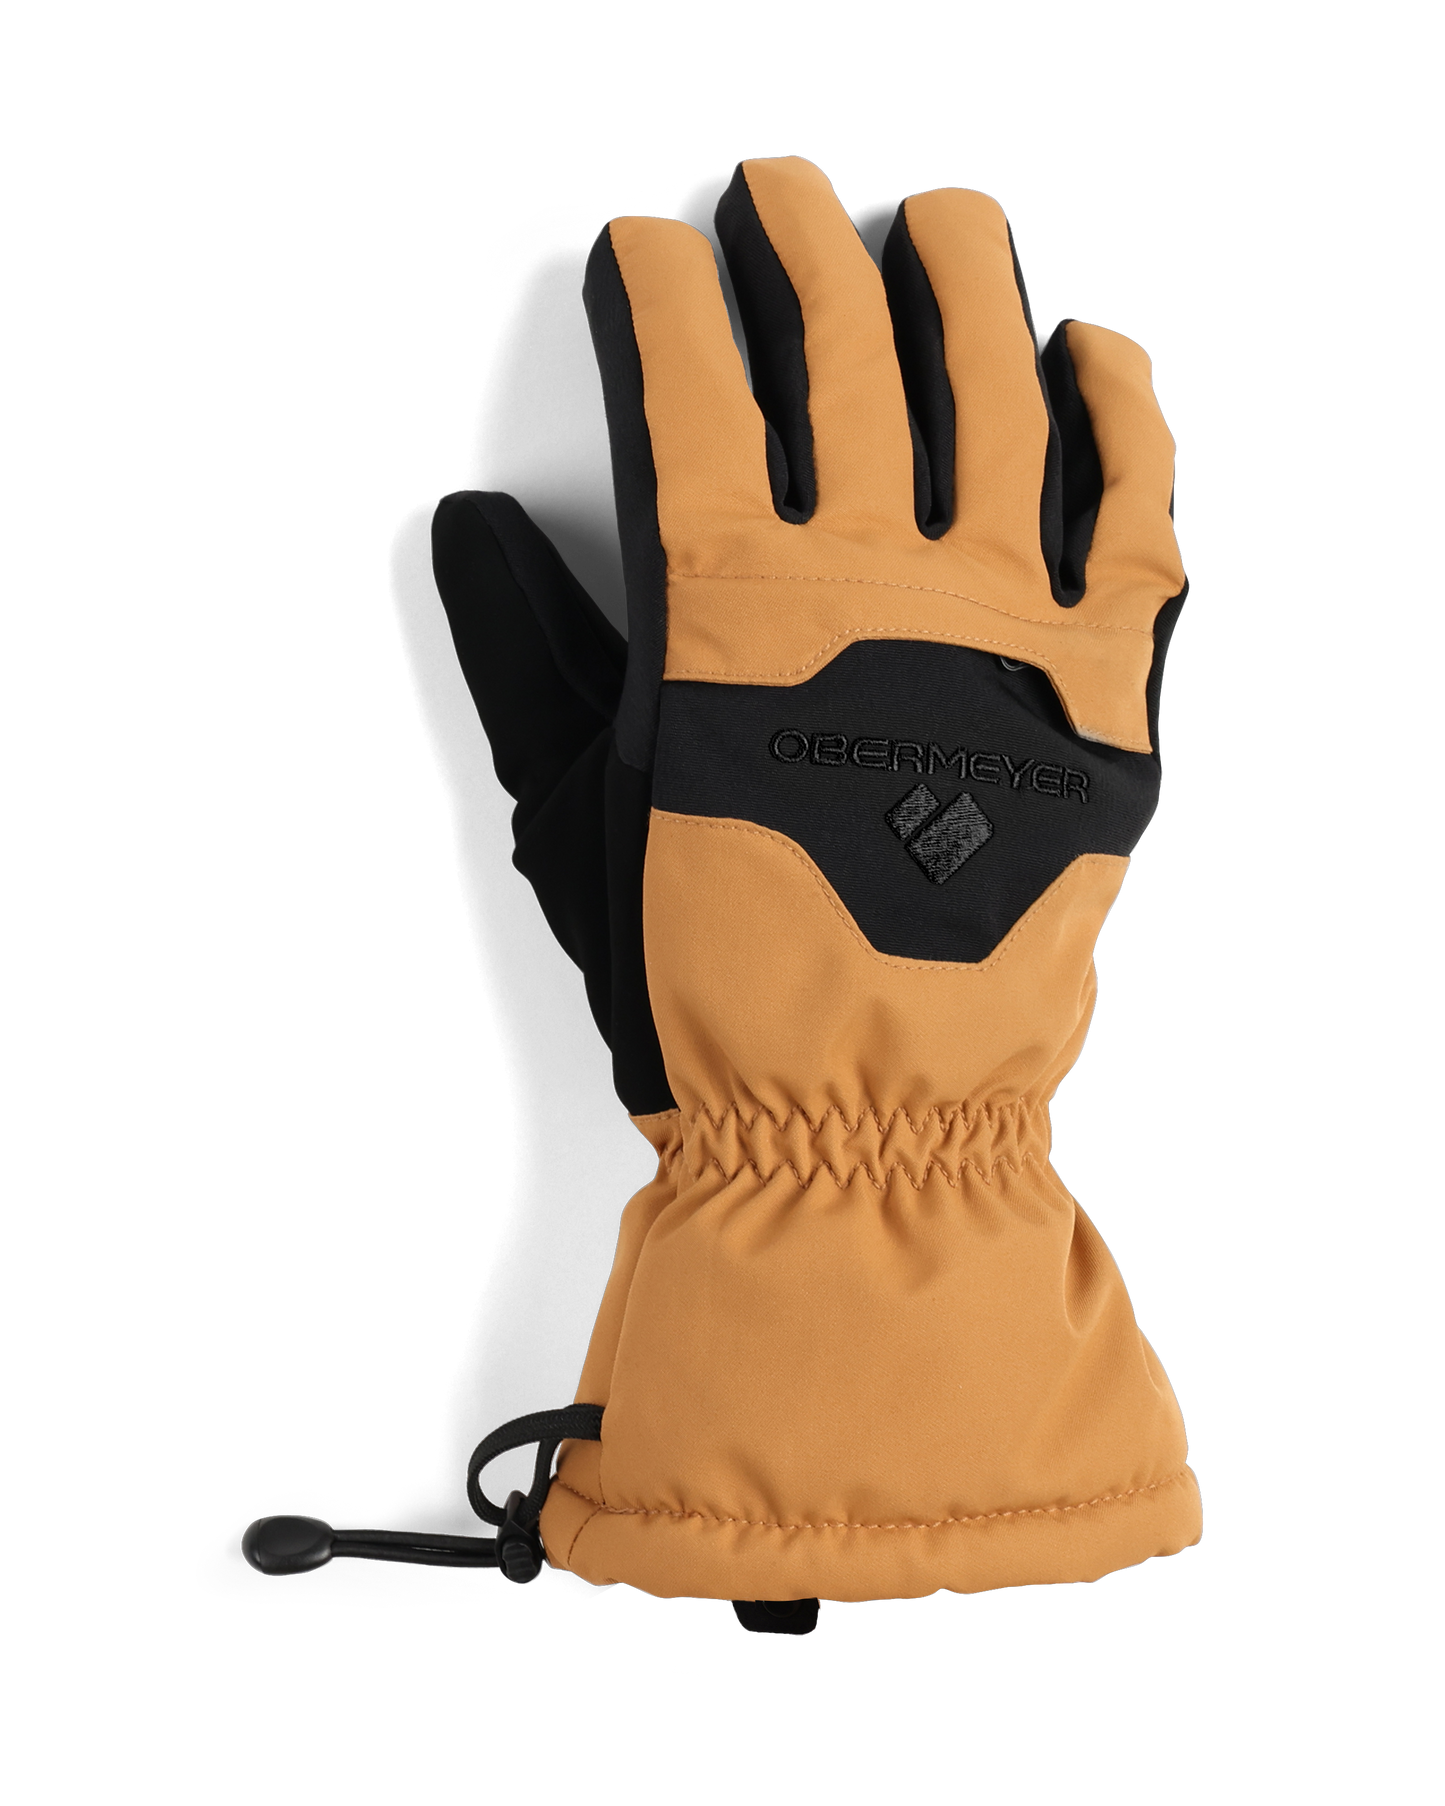 Regulator Glove